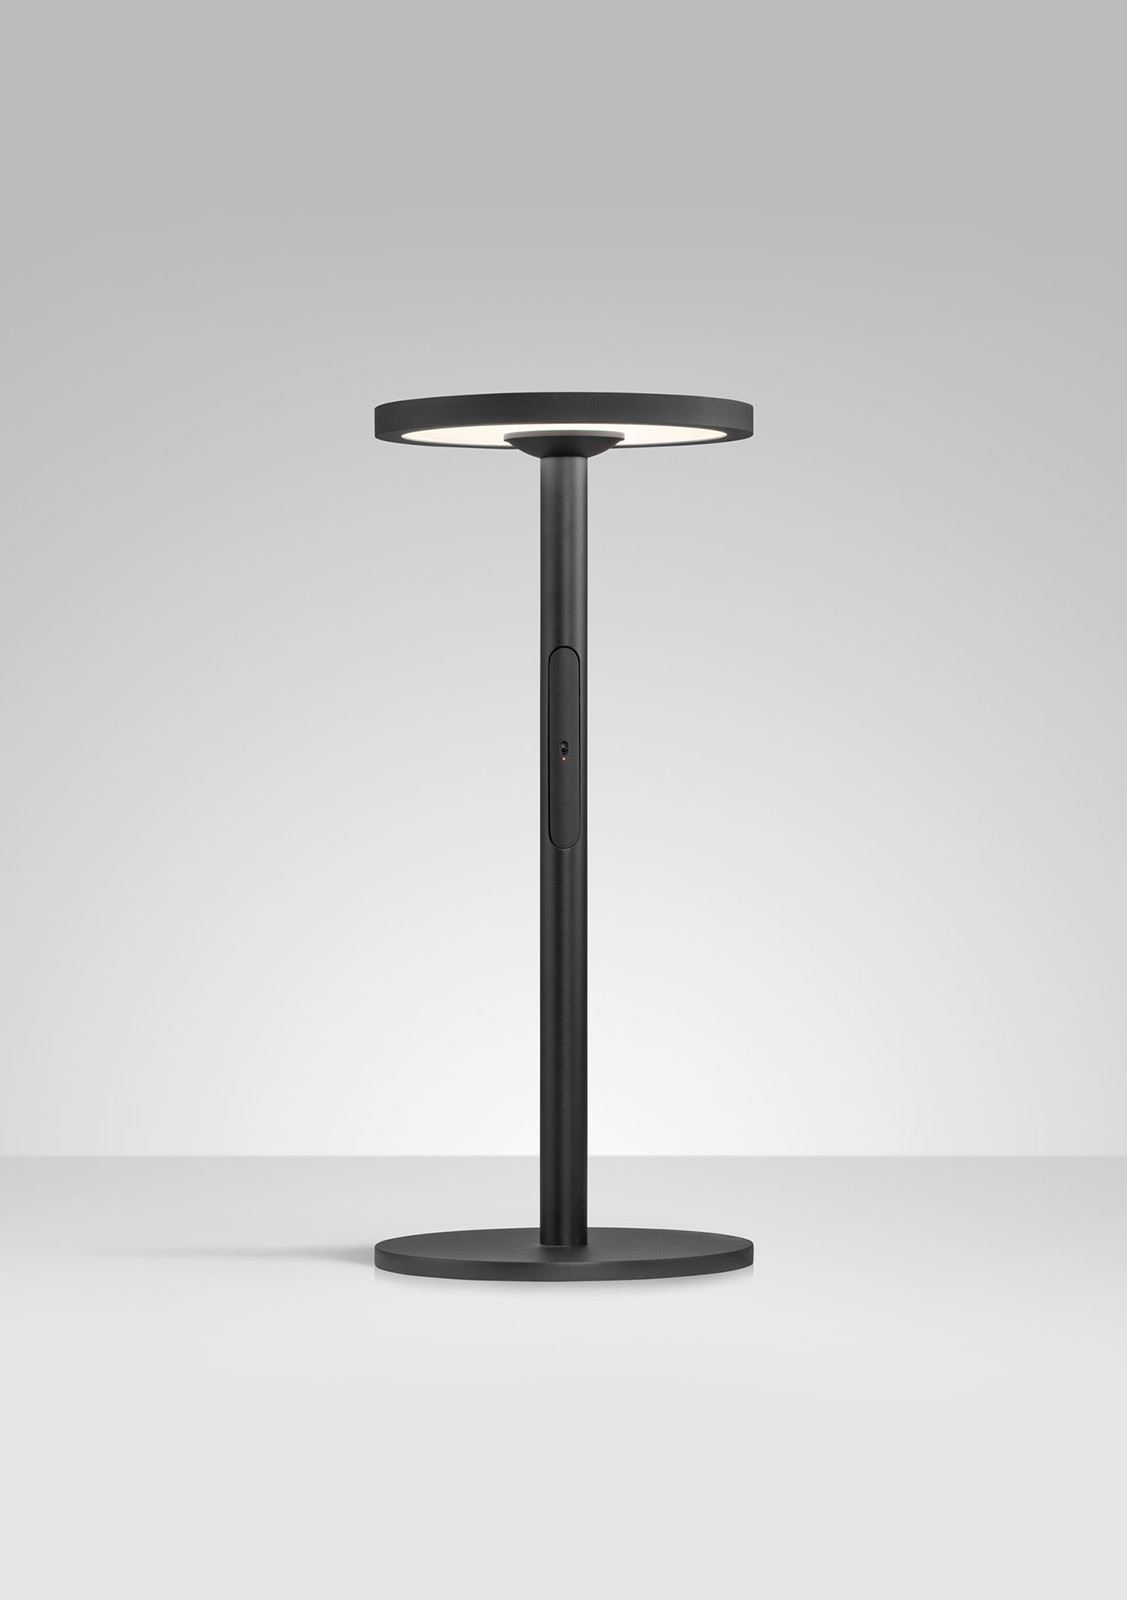 גופי תאורה בקטגוריית: מנורות שולחן  ,שם המוצר: COLUMN